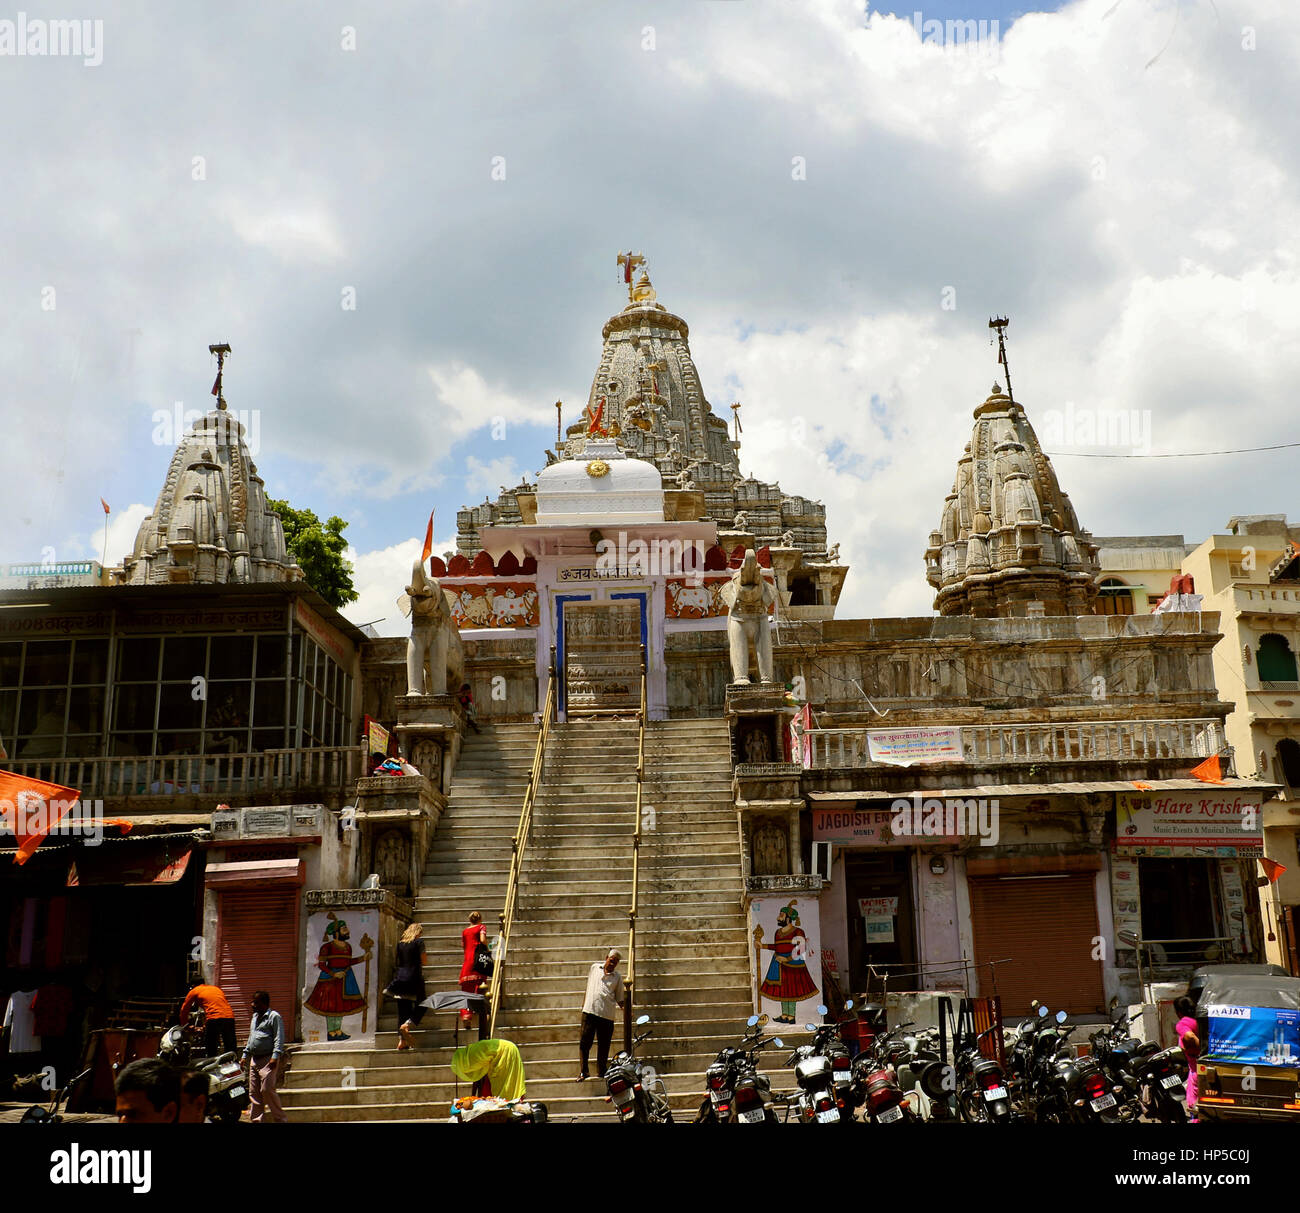 Jagdish temple; Udaipur Stock Photo